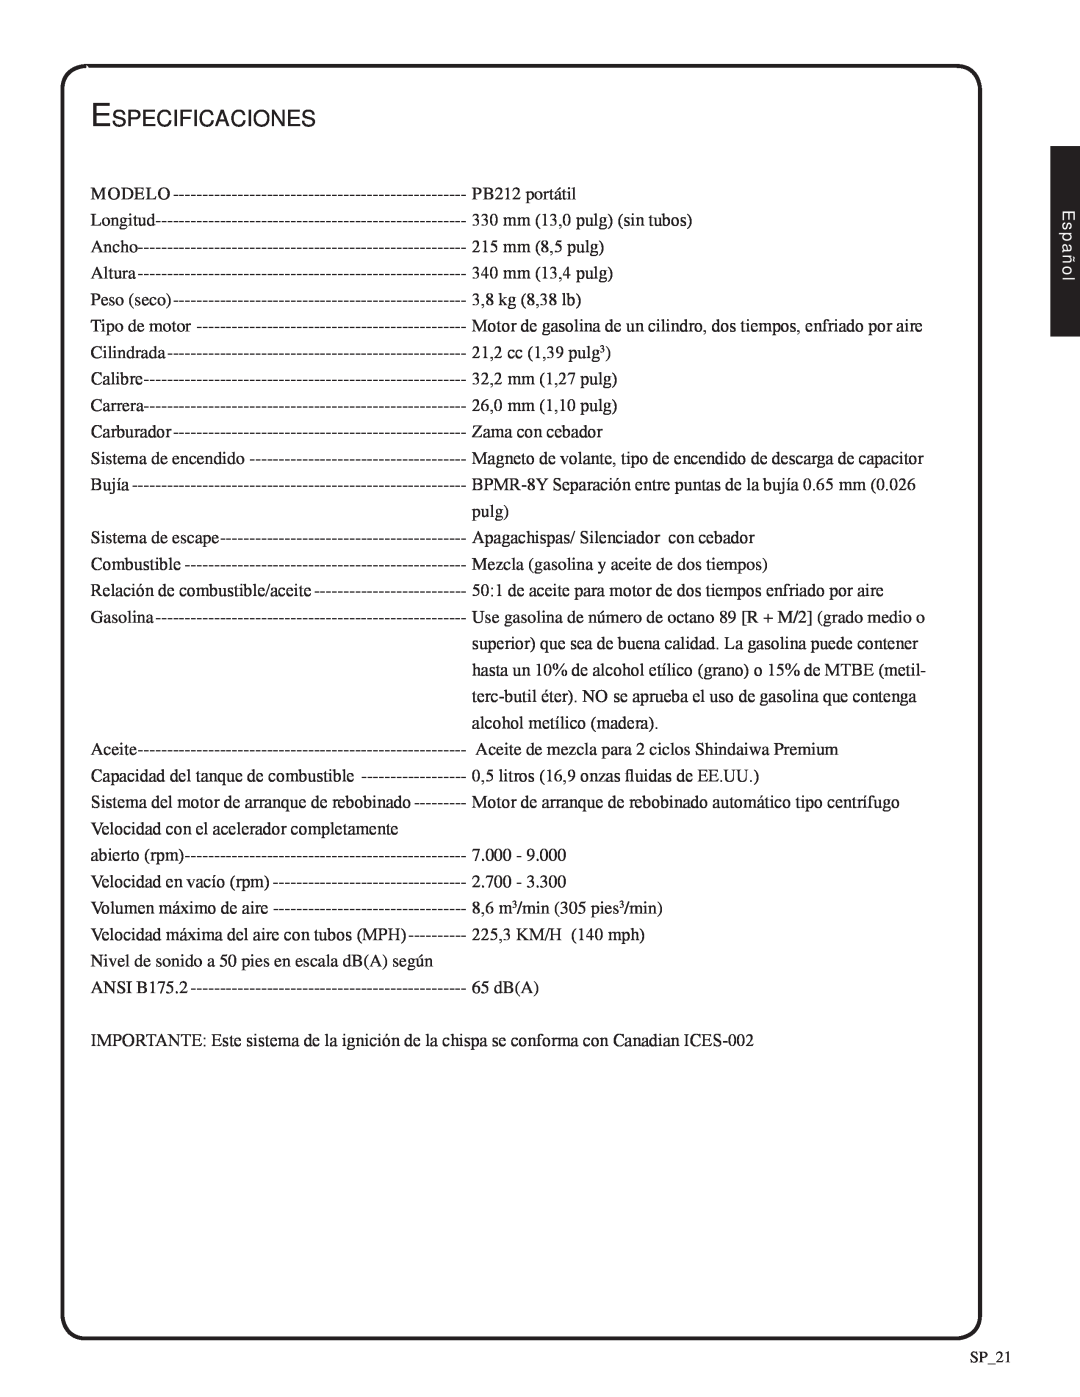 Shindaiwa 82051, EB212 manual Especificaciones, Modelo, Español 